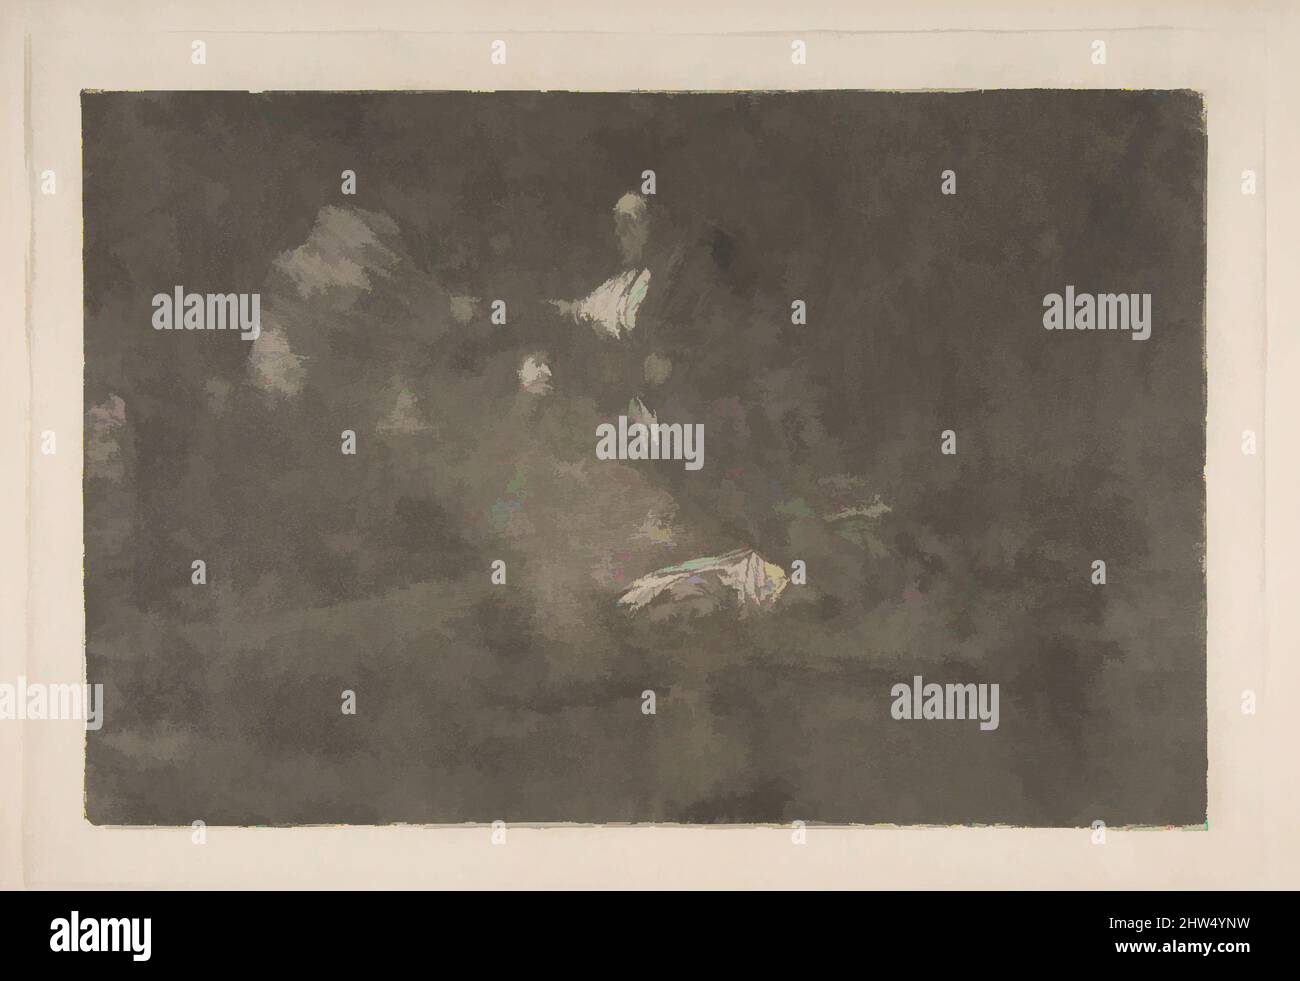 Art inspiré par la planche 18 des 'Disparates' : les oiseaux d'une plume se rassemblent, env. 1816–23 (impression privée CA4), décapage, aquatint bruni et burin, plaque : 9 5/8 × 13 3/4 po. (24,5 × 35 cm), Prints, Goya (Francisco de Goya y Lucientes) (Espagnol, Fuendetodos 1746–1828 Bordeaux, oeuvres classiques modernisées par Artotop avec une touche de modernité. Formes, couleur et valeur, impact visuel accrocheur sur l'art émotions par la liberté d'œuvres d'art d'une manière contemporaine. Un message intemporel qui cherche une nouvelle direction créative. Artistes qui se tournent vers le support numérique et créent le NFT Artotop Banque D'Images